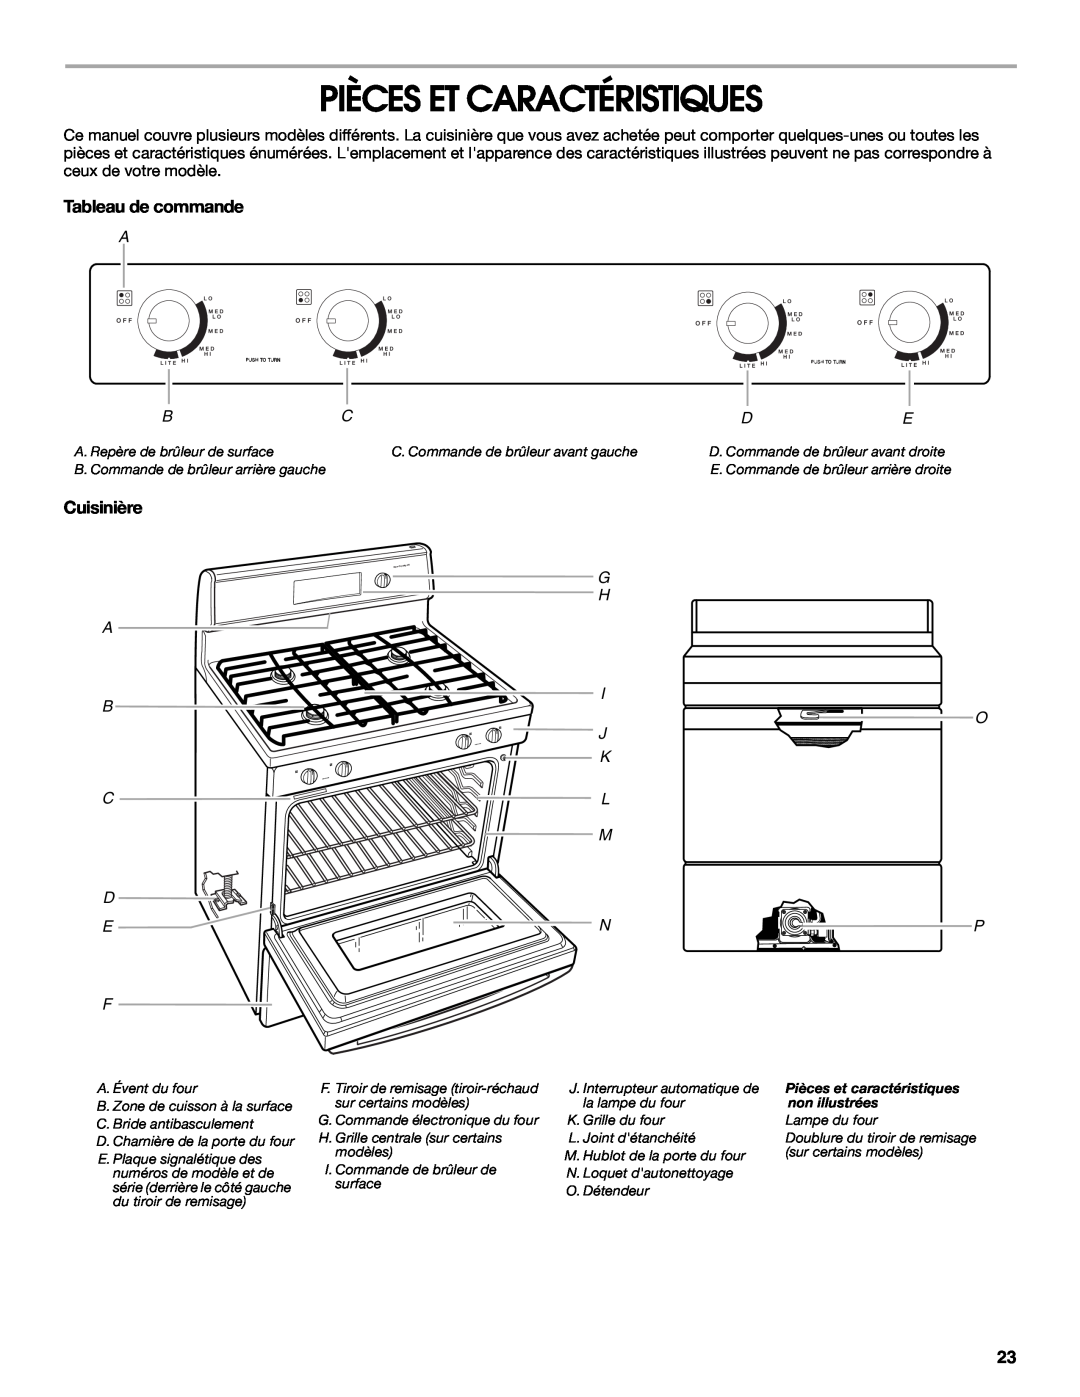 IKEA Range manual Pièces Et Caractéristiques, Tableau de commande, Cuisinière 